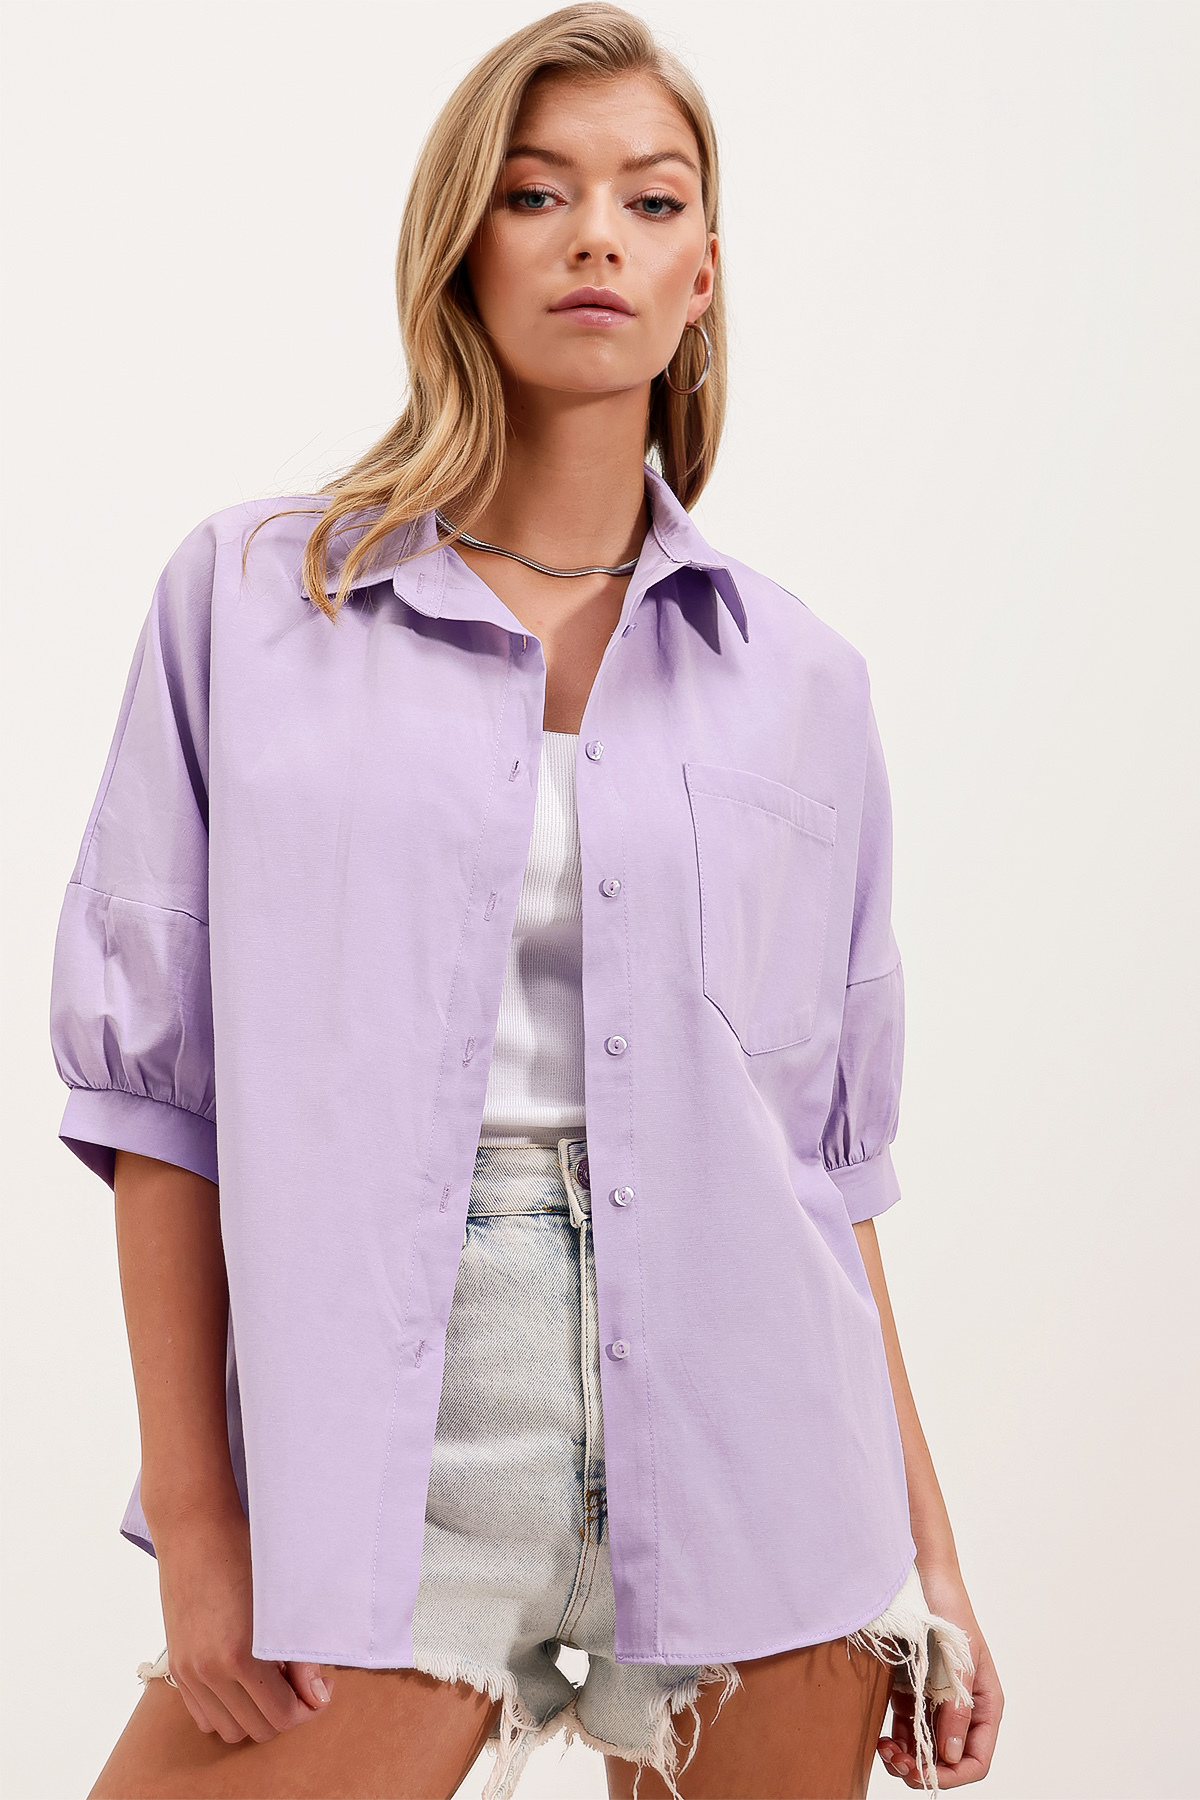 Bigdart 20213 Oversize Short Sleeve Basic Shirt - Lilac